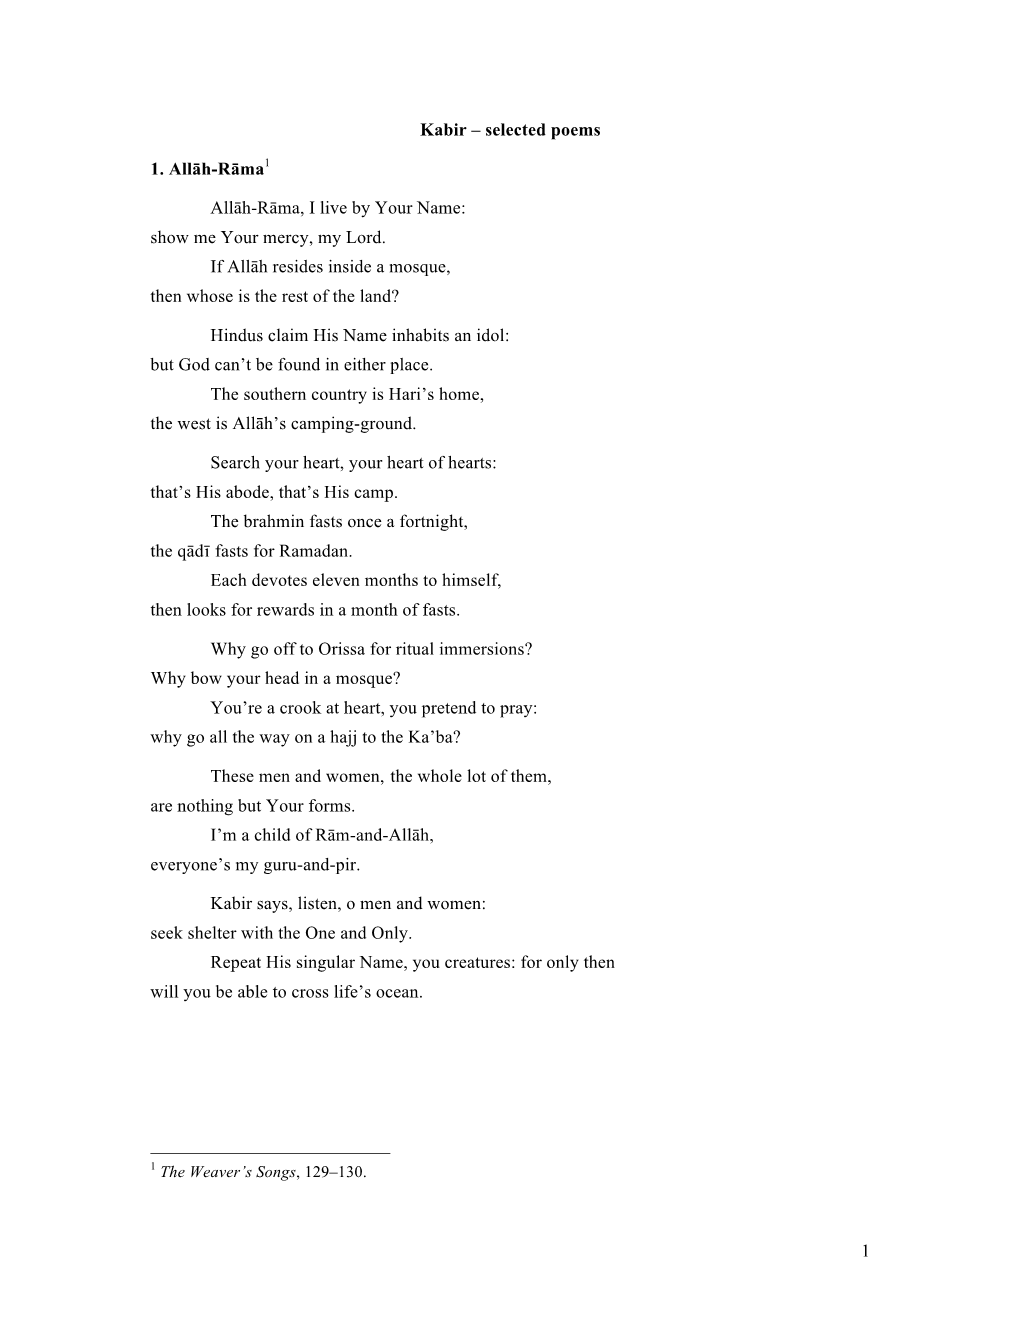 1 Kabir – Selected Poems 1. Allāh-Rāma1 Allāh-Rāma, I Live By